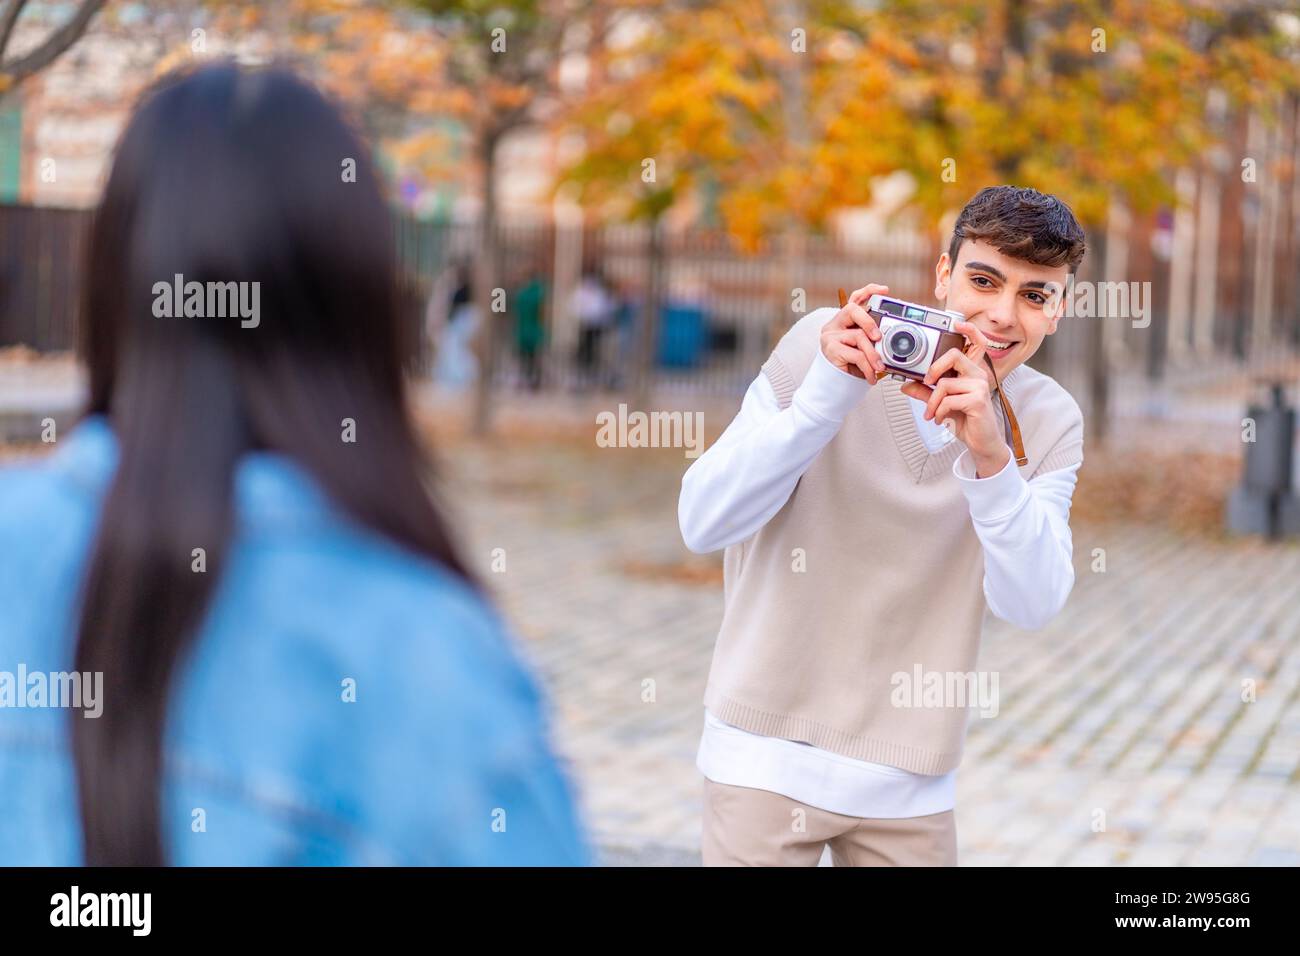 Freunde, die mit einer Digitalkamera in der Stadt Fotos machen Stockfoto